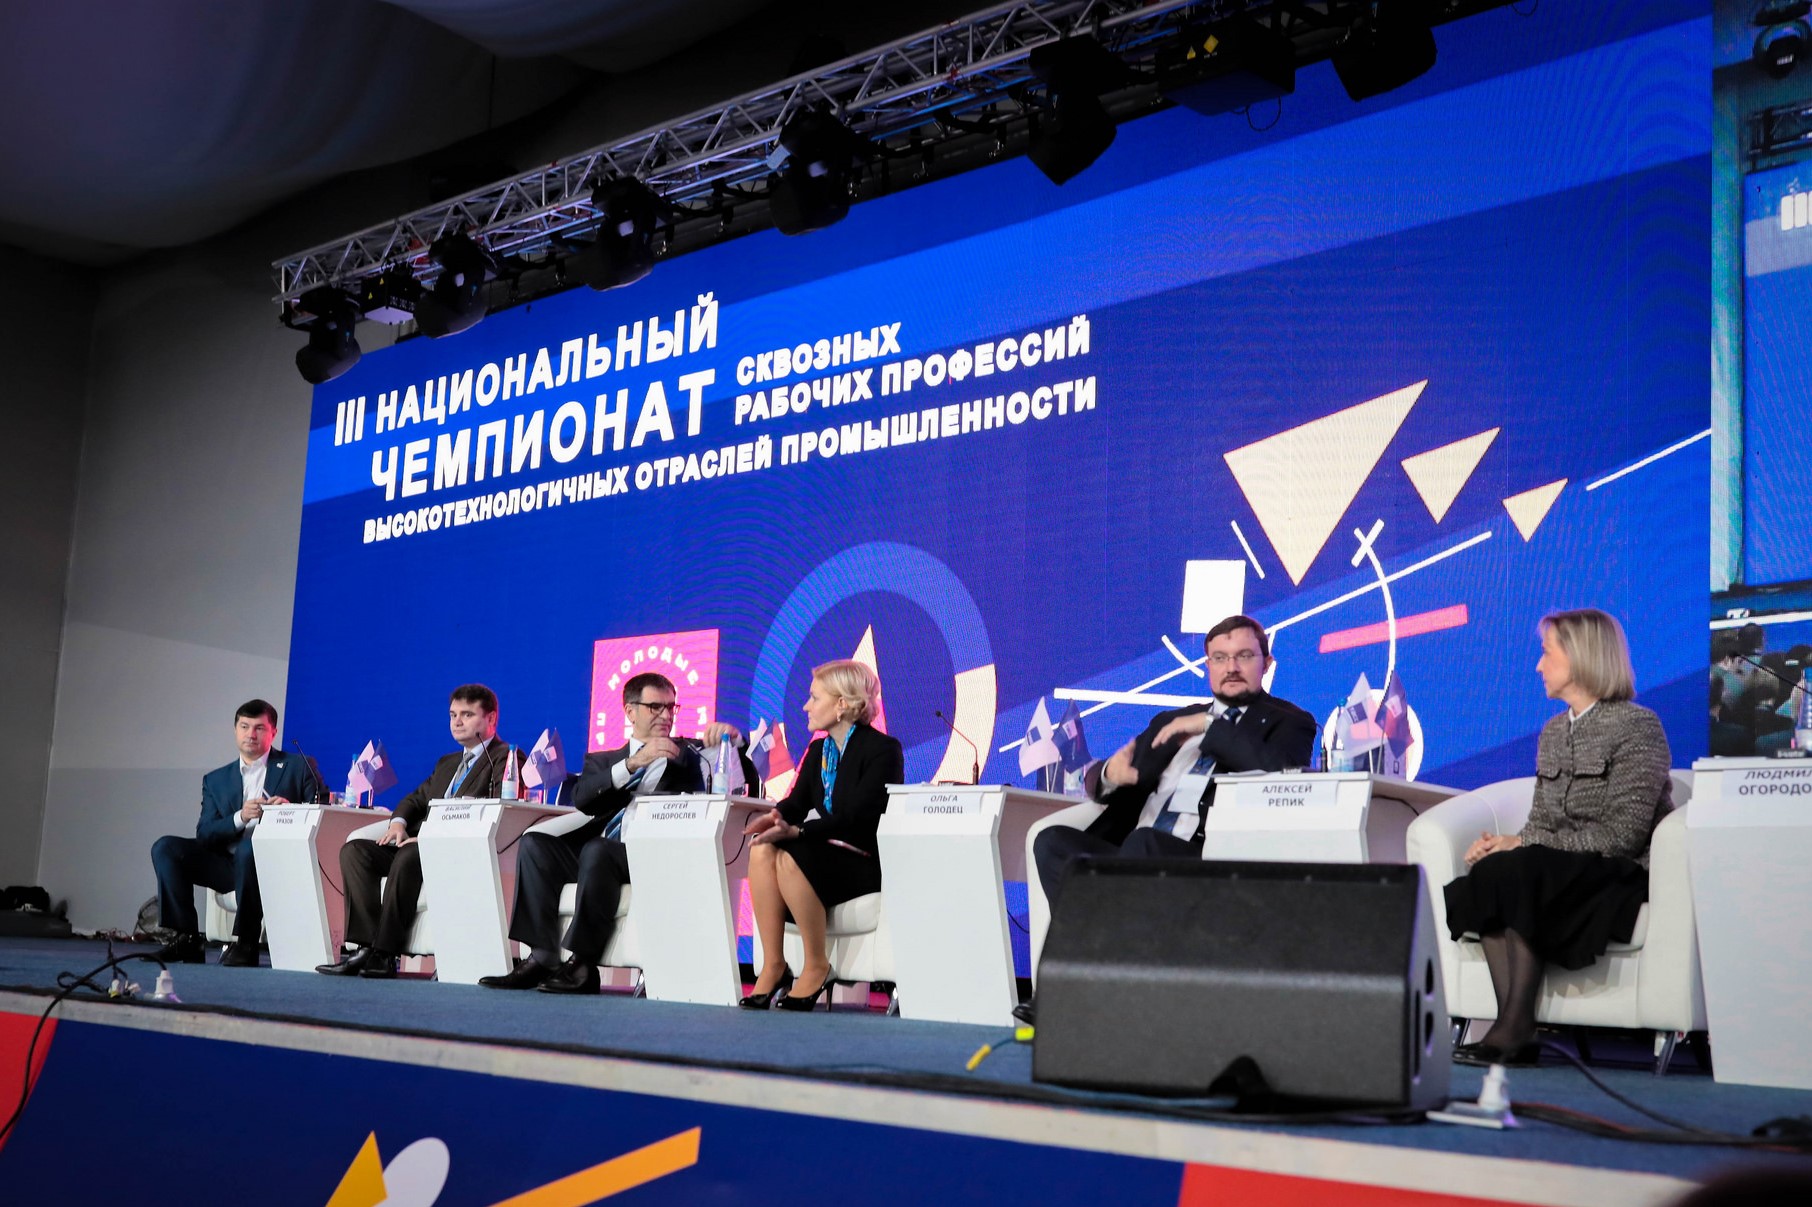 Чемпионат WorldSkills Hi-Tech пройдёт в Екатеринбурге 4-6 ноября